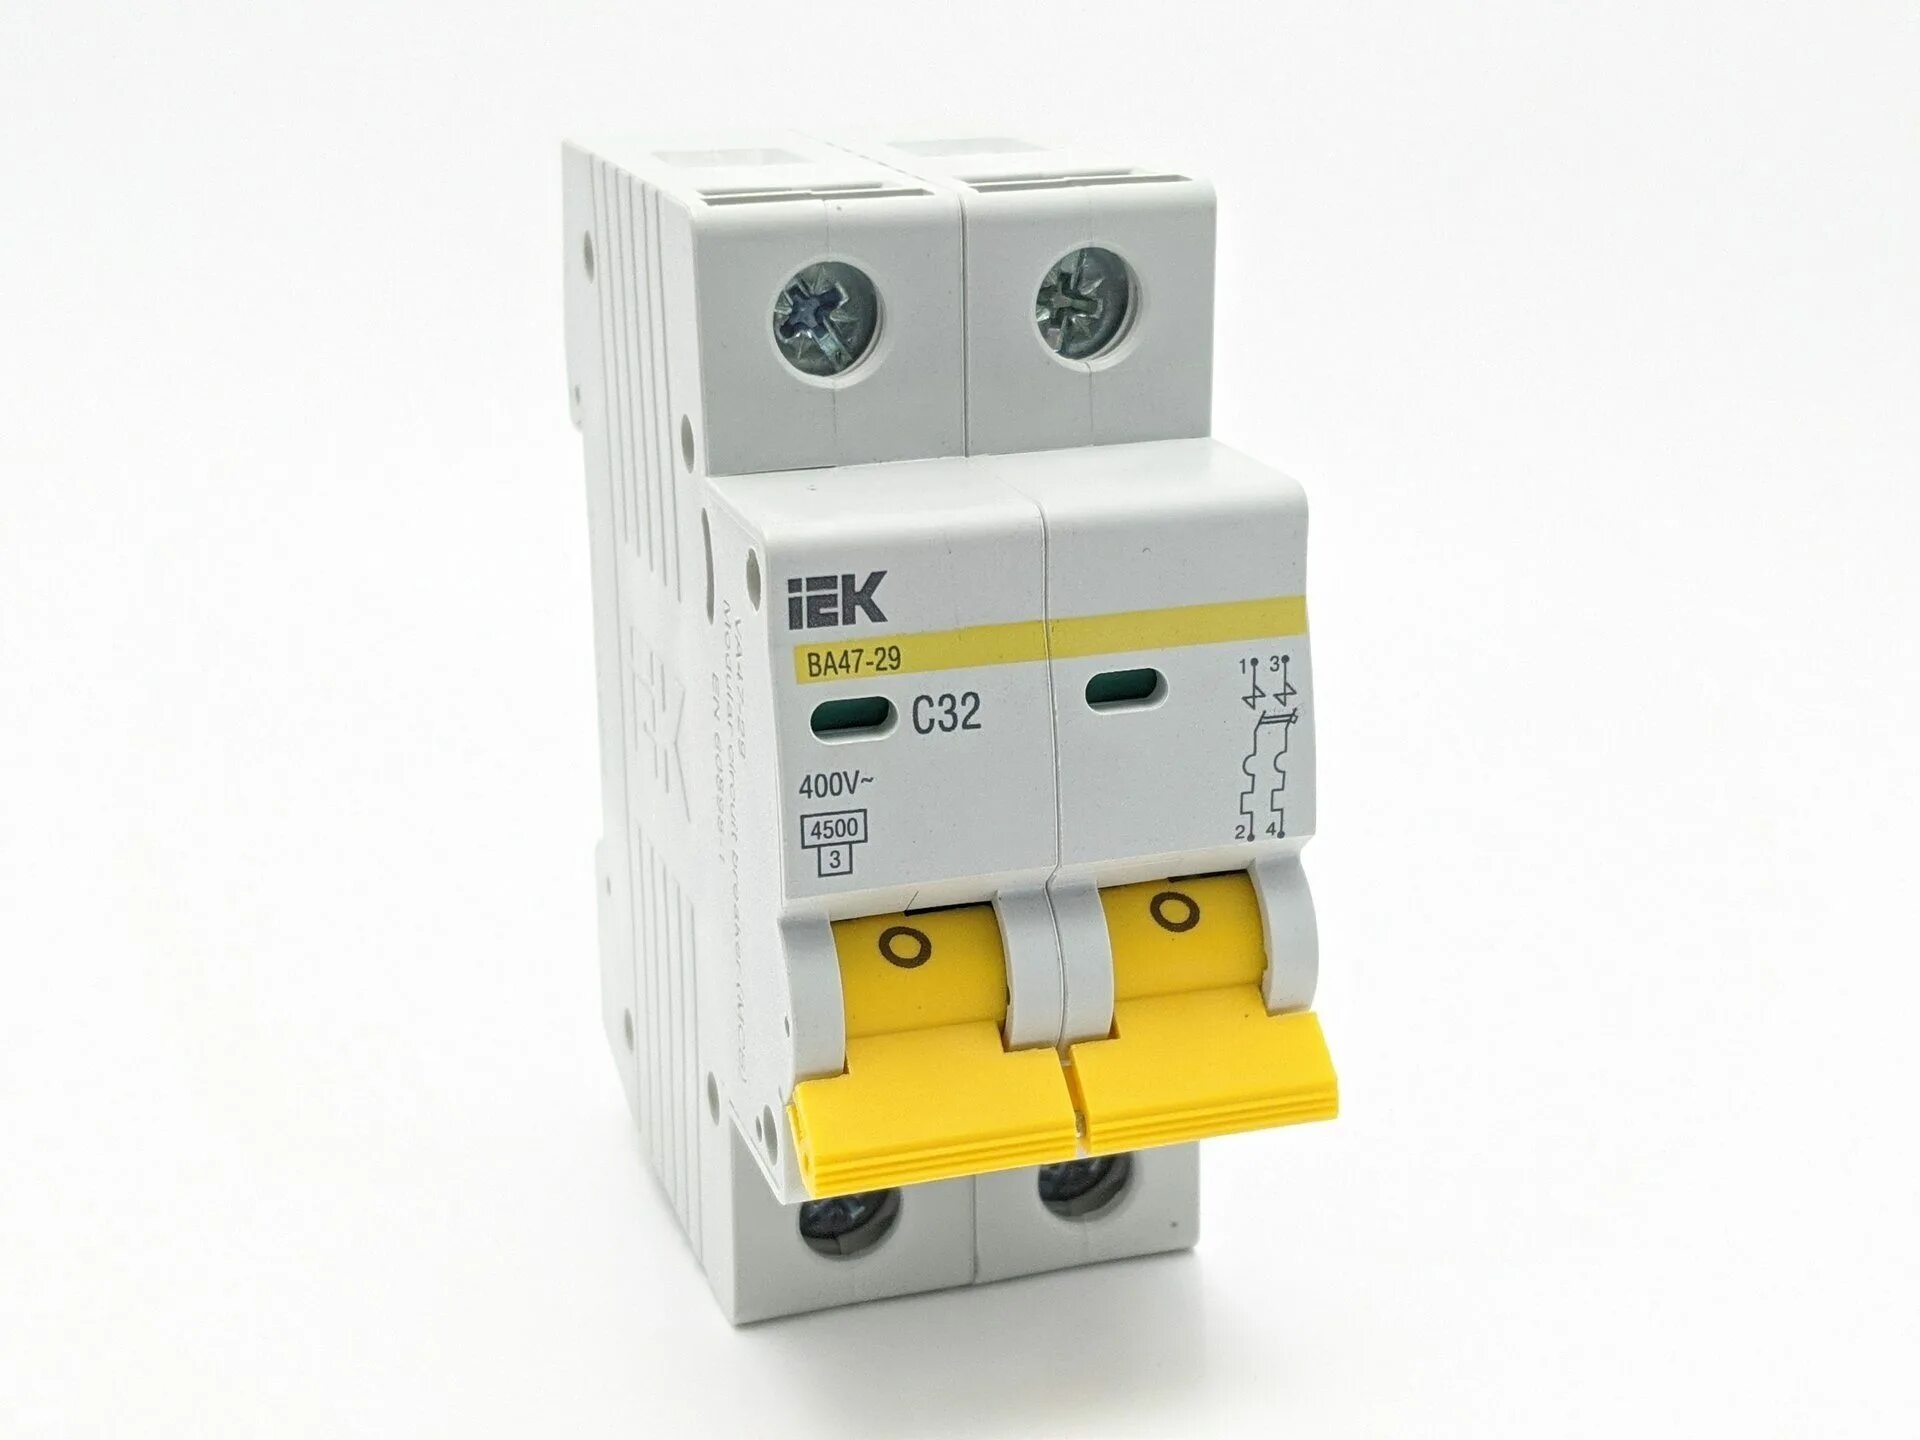 Автоматический выключатель 25а ИЭК. Автомат IEK 2п 16а. Автоматический выключатель IEK ва47-29 с1. Автомат выключатель ва47-29 4р 10а ИЭК.